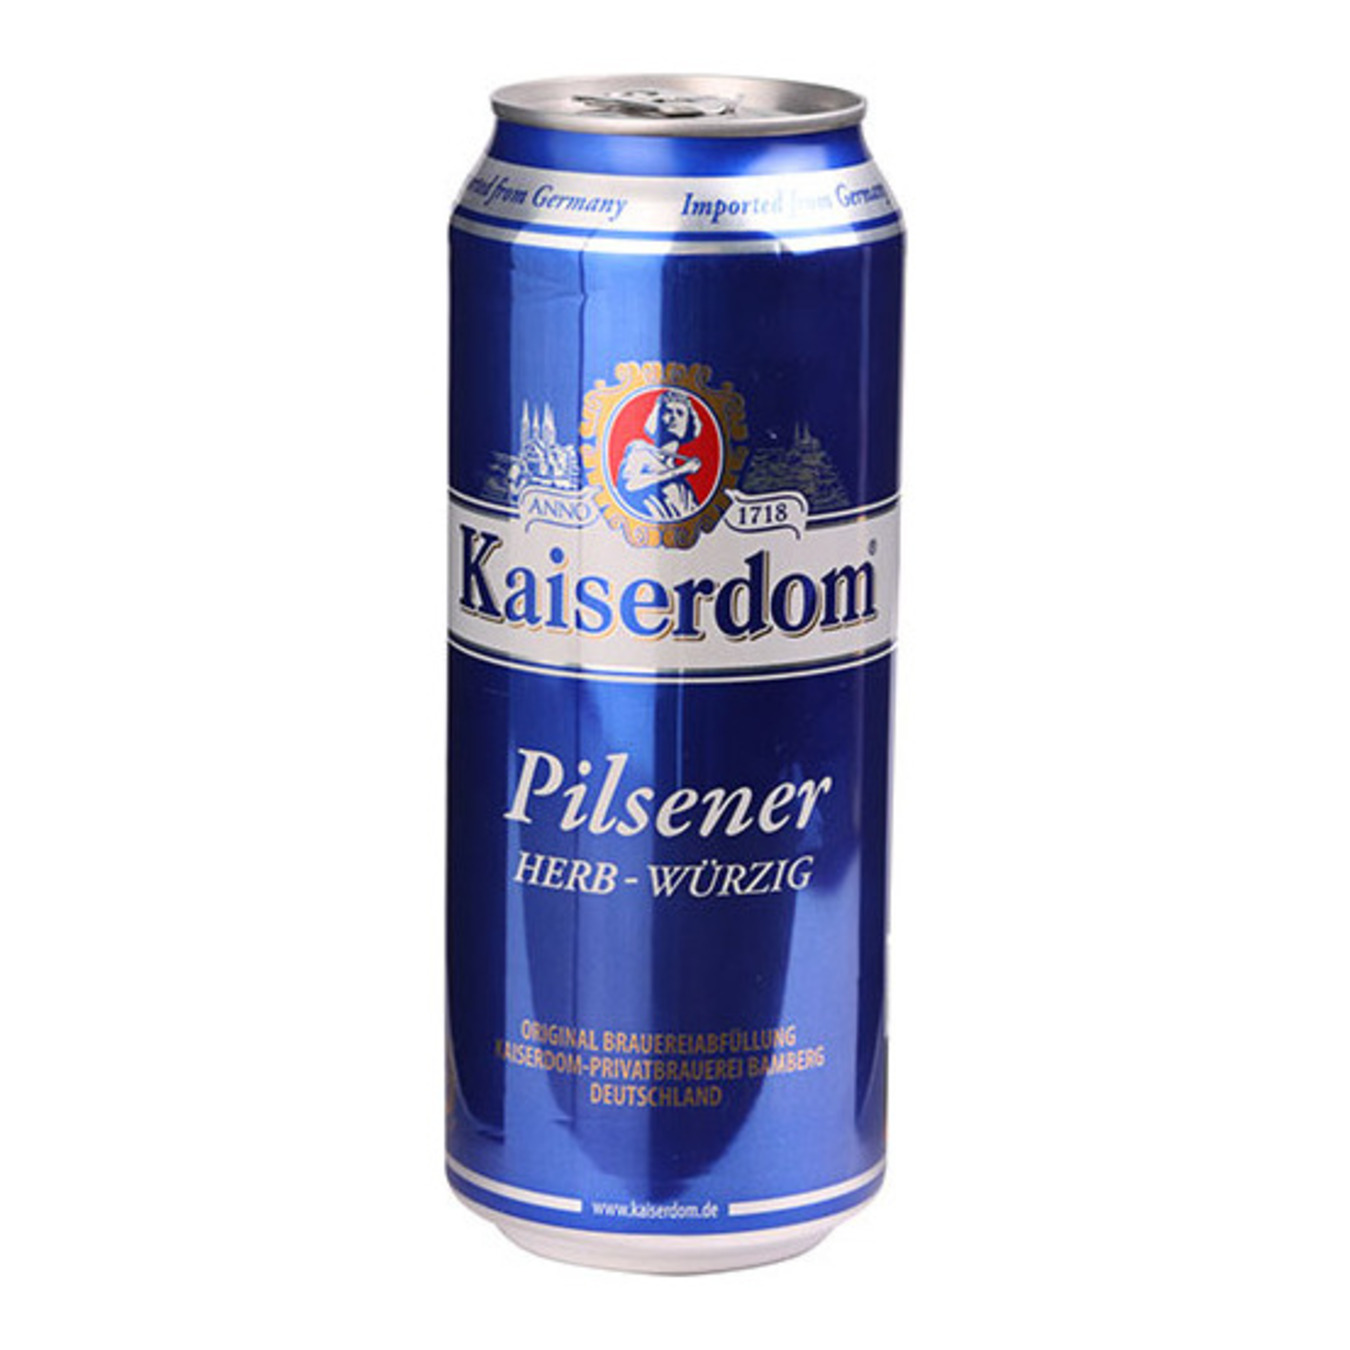 Пиво Kaiserdom Pilsener Herb-Wurzig светлое 4,7 % 0,5л